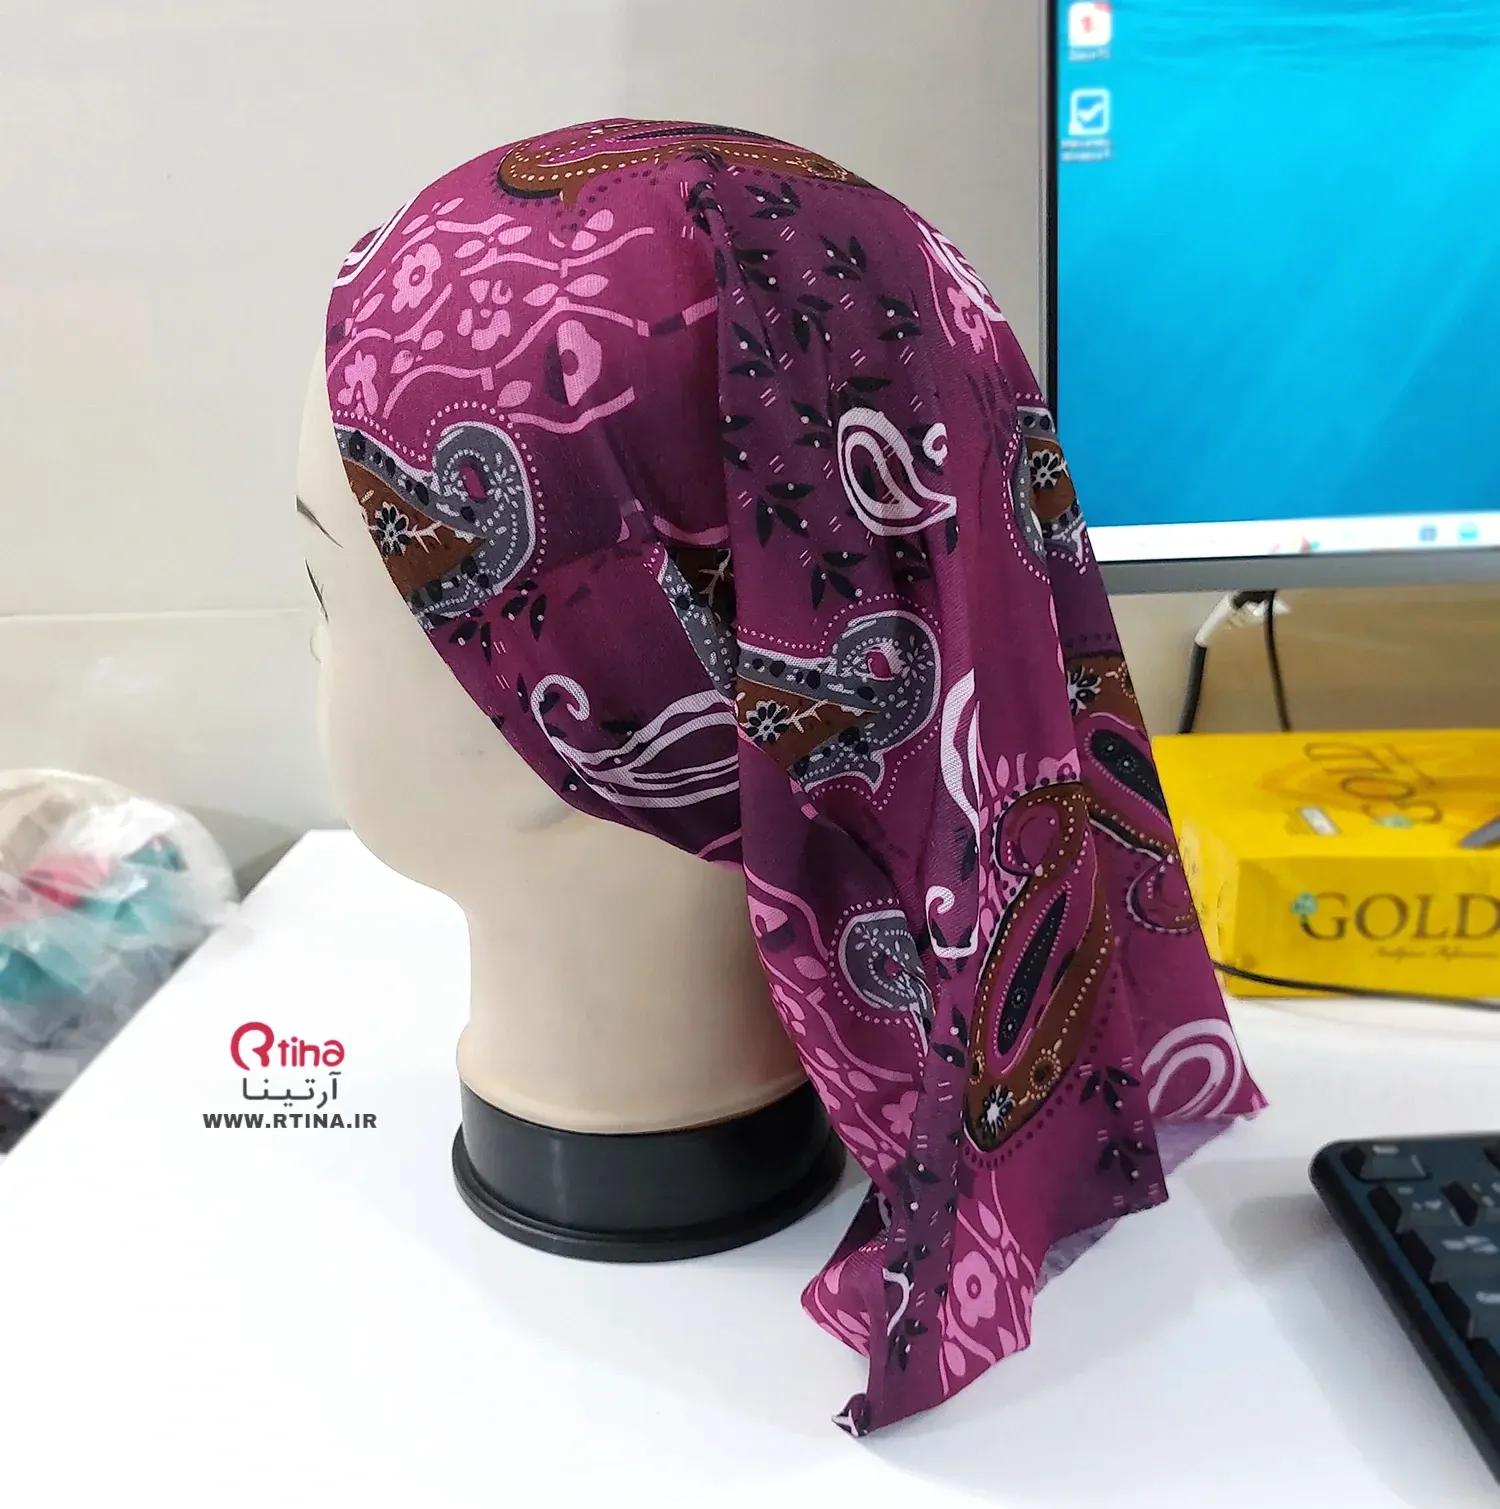 اسکارف زنانه در فروشگاه اینترنتی آرتینا